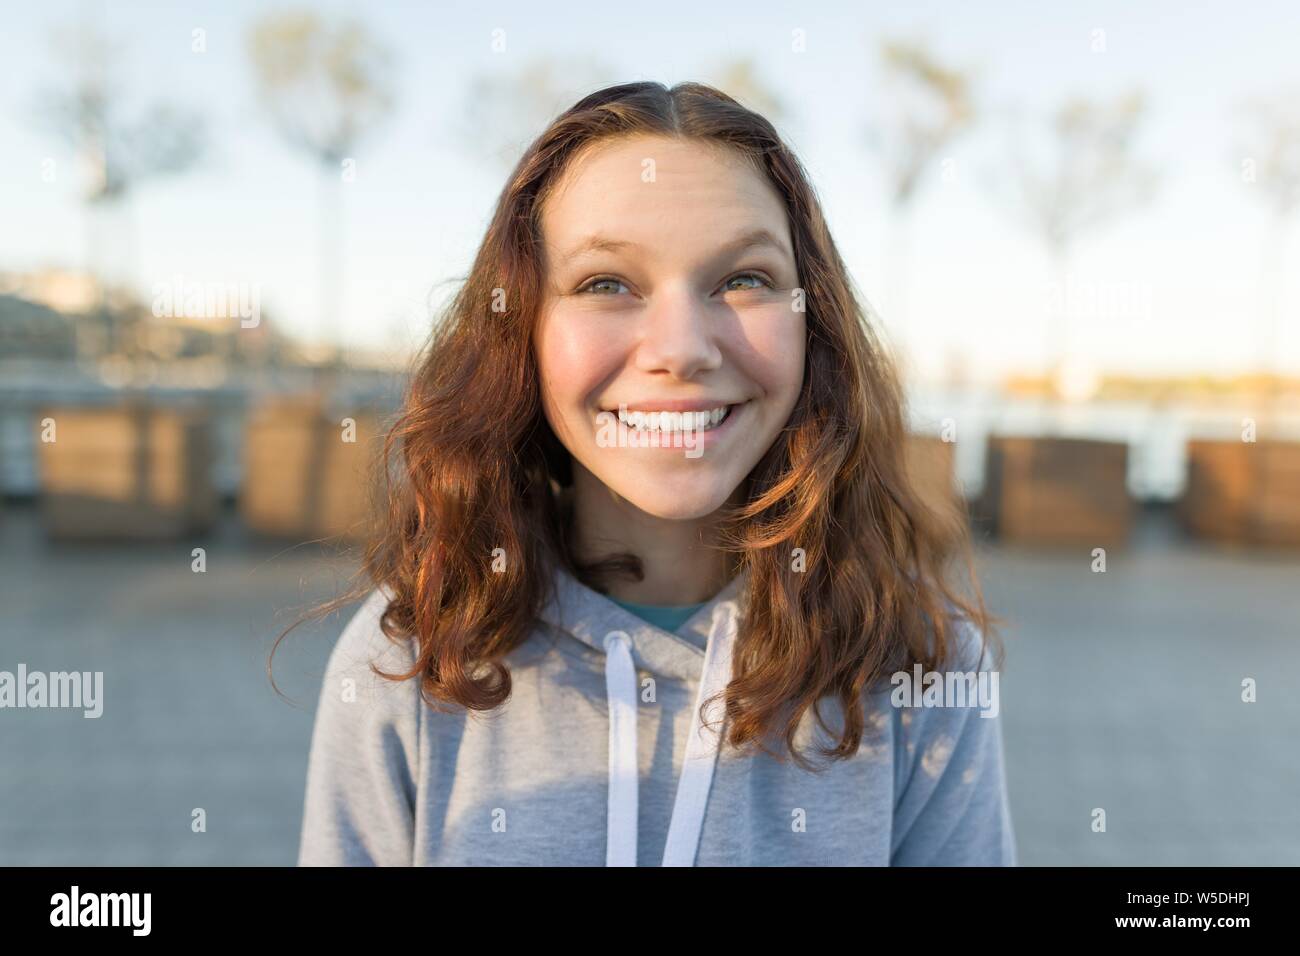 Outdoor ritratto della bella sorridente ragazza adolescente 14, 15 anni, ora d'oro Foto Stock